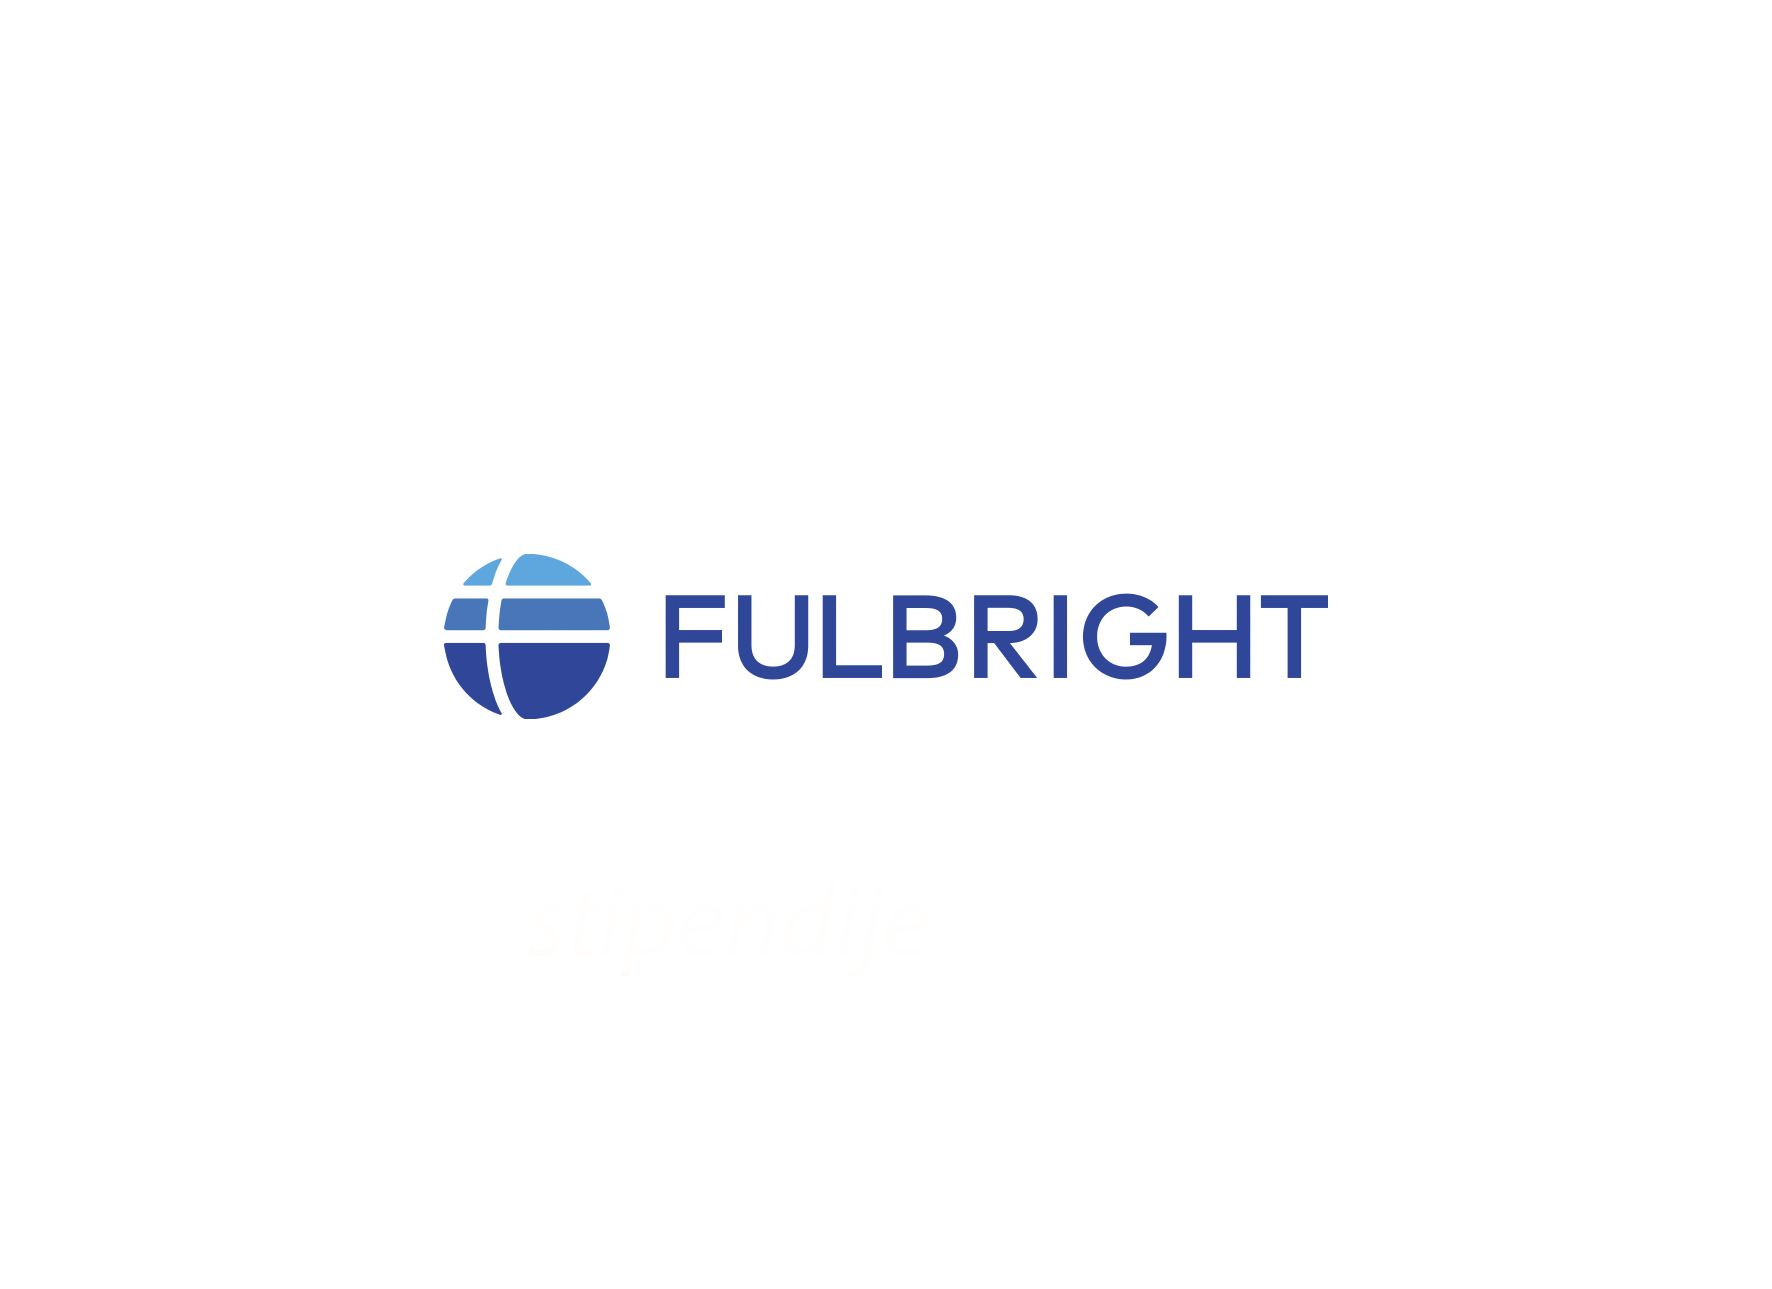  Otvoren poziv za Fulbright Visiting Scholar stipendiju